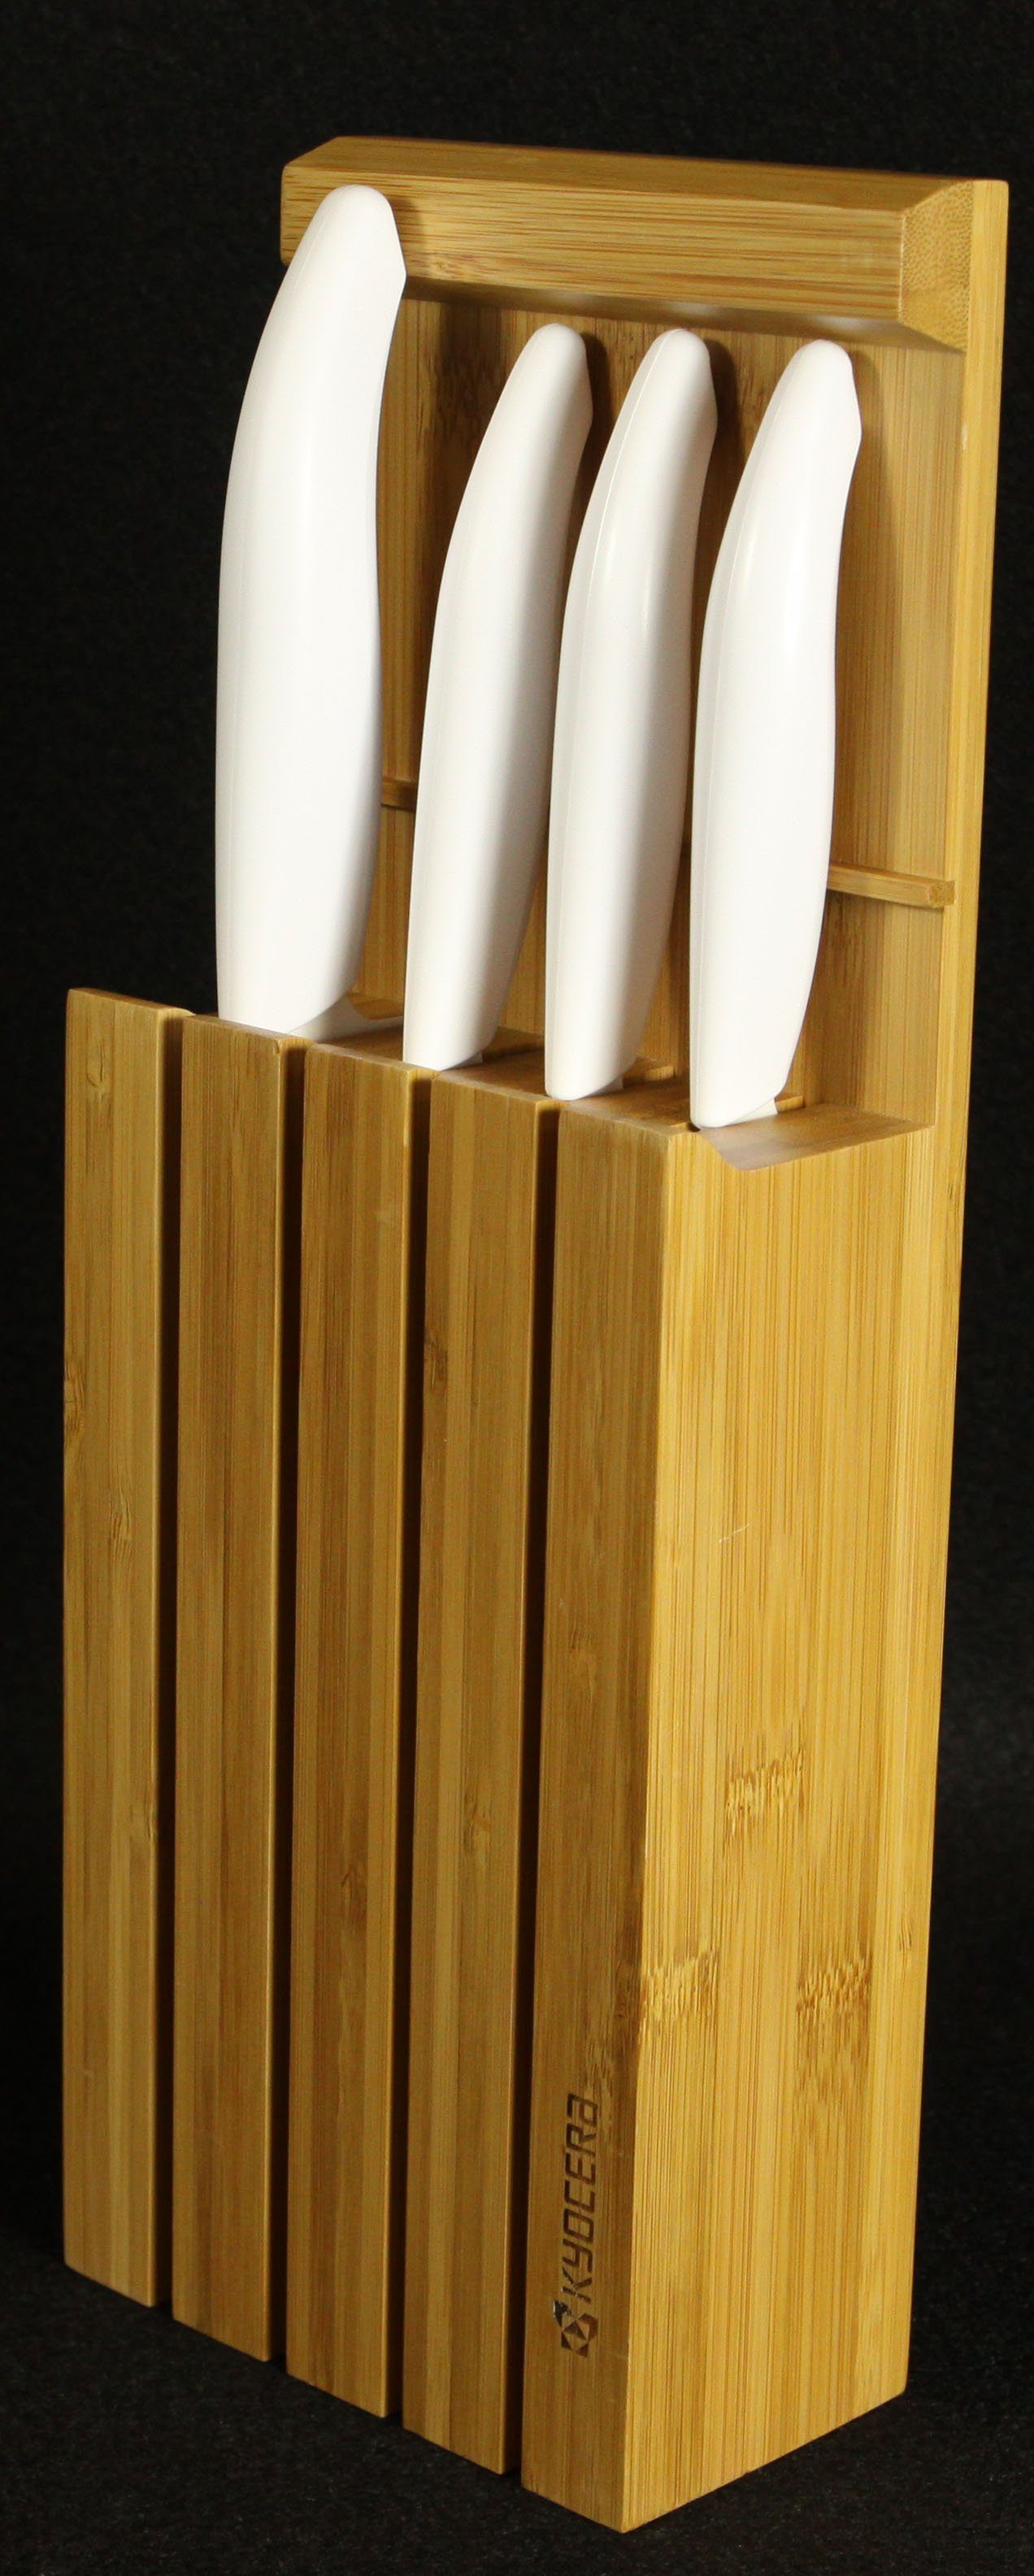 KYOCERA Messerblock Bambus-Messerblock inklusive 4 Messer, GEN white (5tlg), 3in1 - geegnet für Schublade, zum Aufstellen und Aufhängen